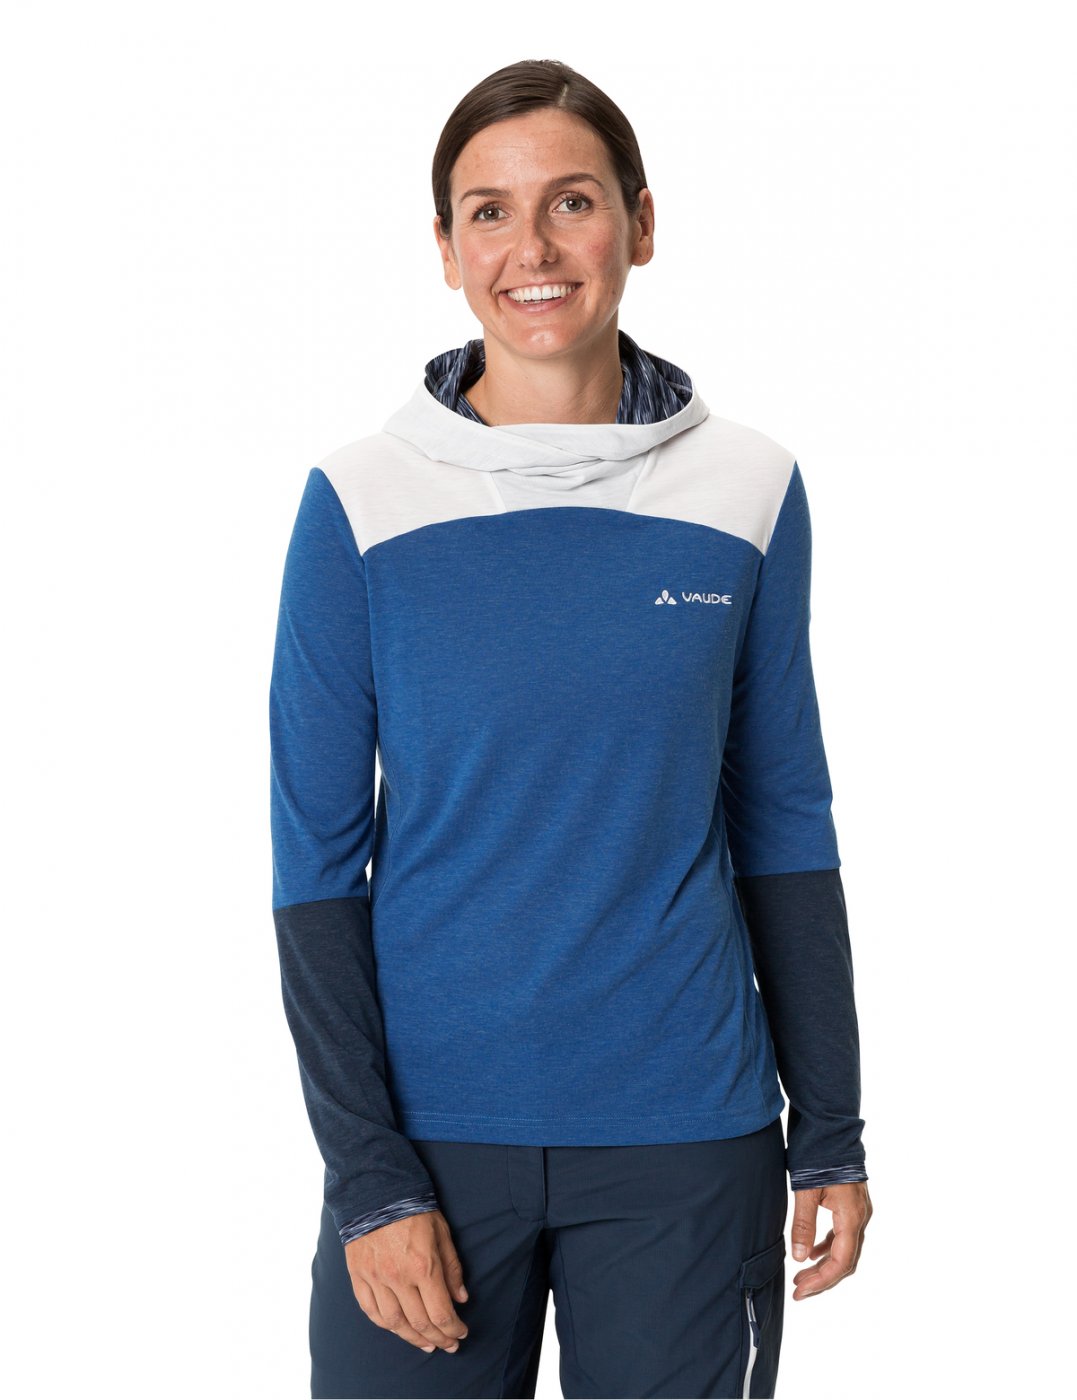 LS Tremalzo - Damen Shirt ultramarine. Shirt Mtb Women\'s Vaude